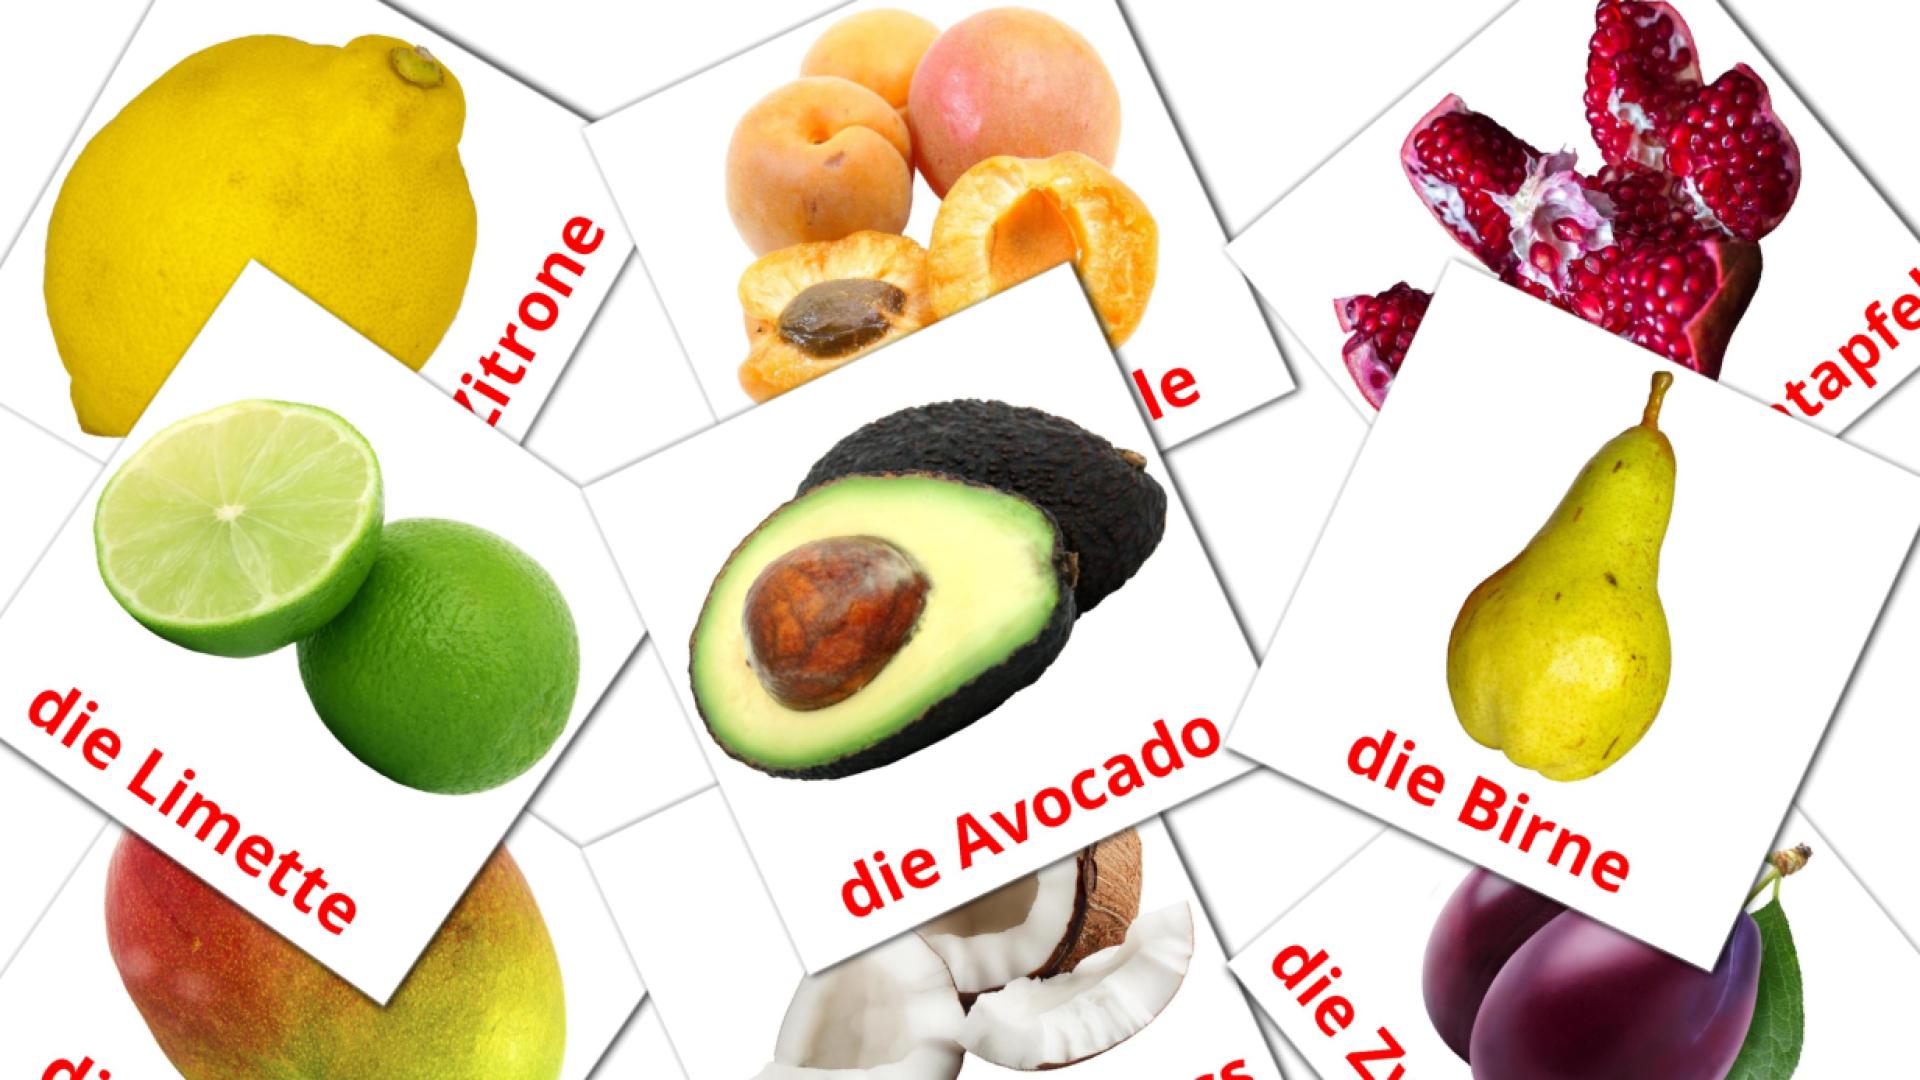 Frutas - Cartões de vocabulário alemão